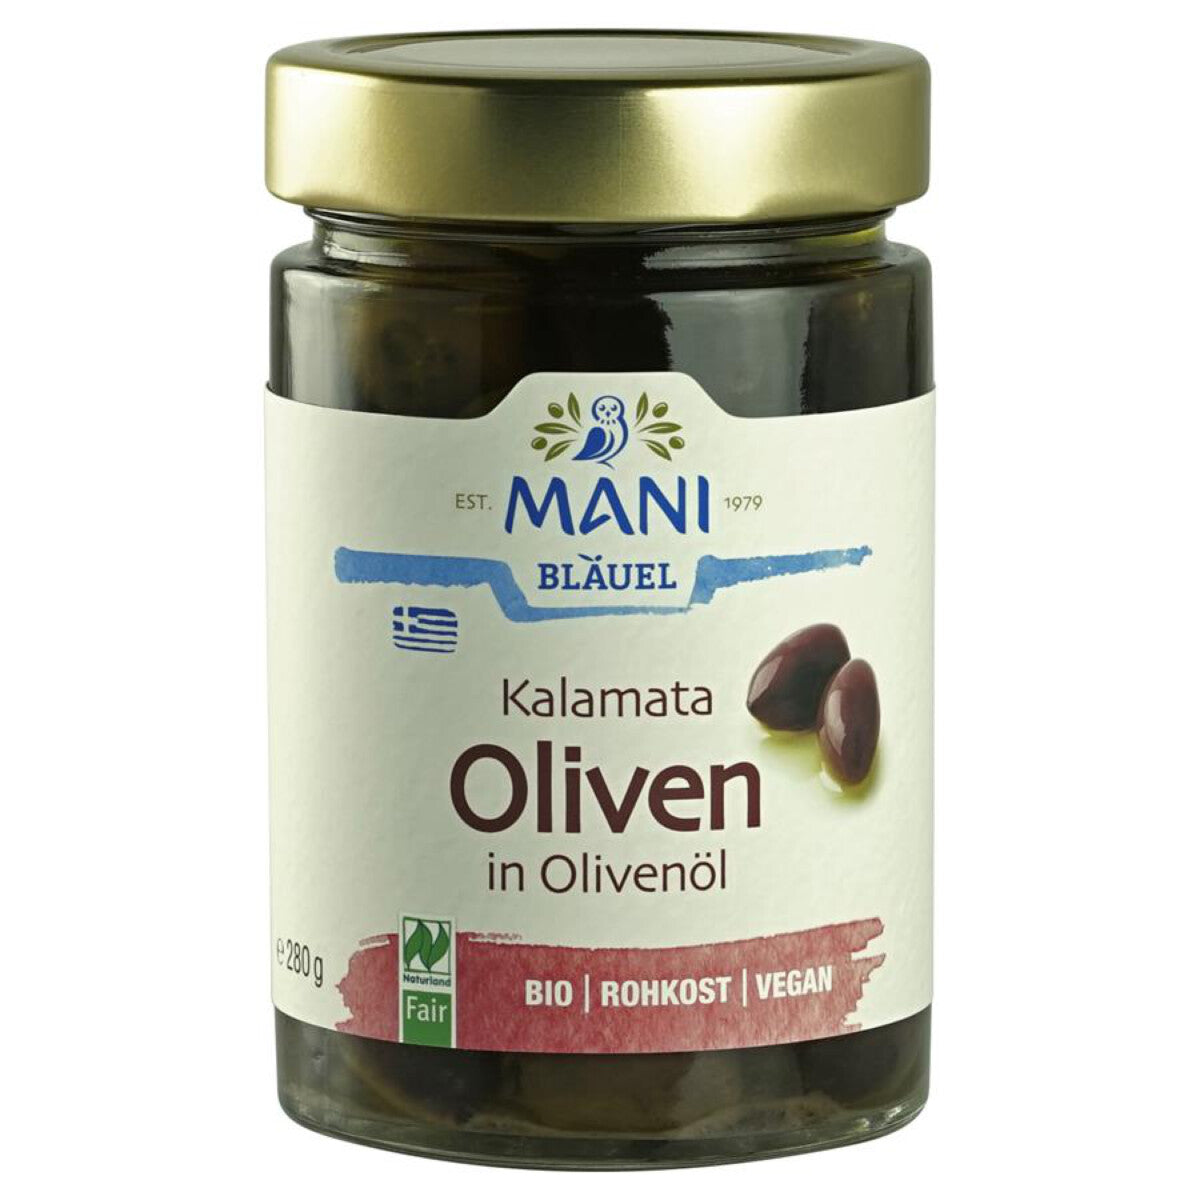 MANI BLÄUEL Kalamata Oliven in Olivenöl - 280 g